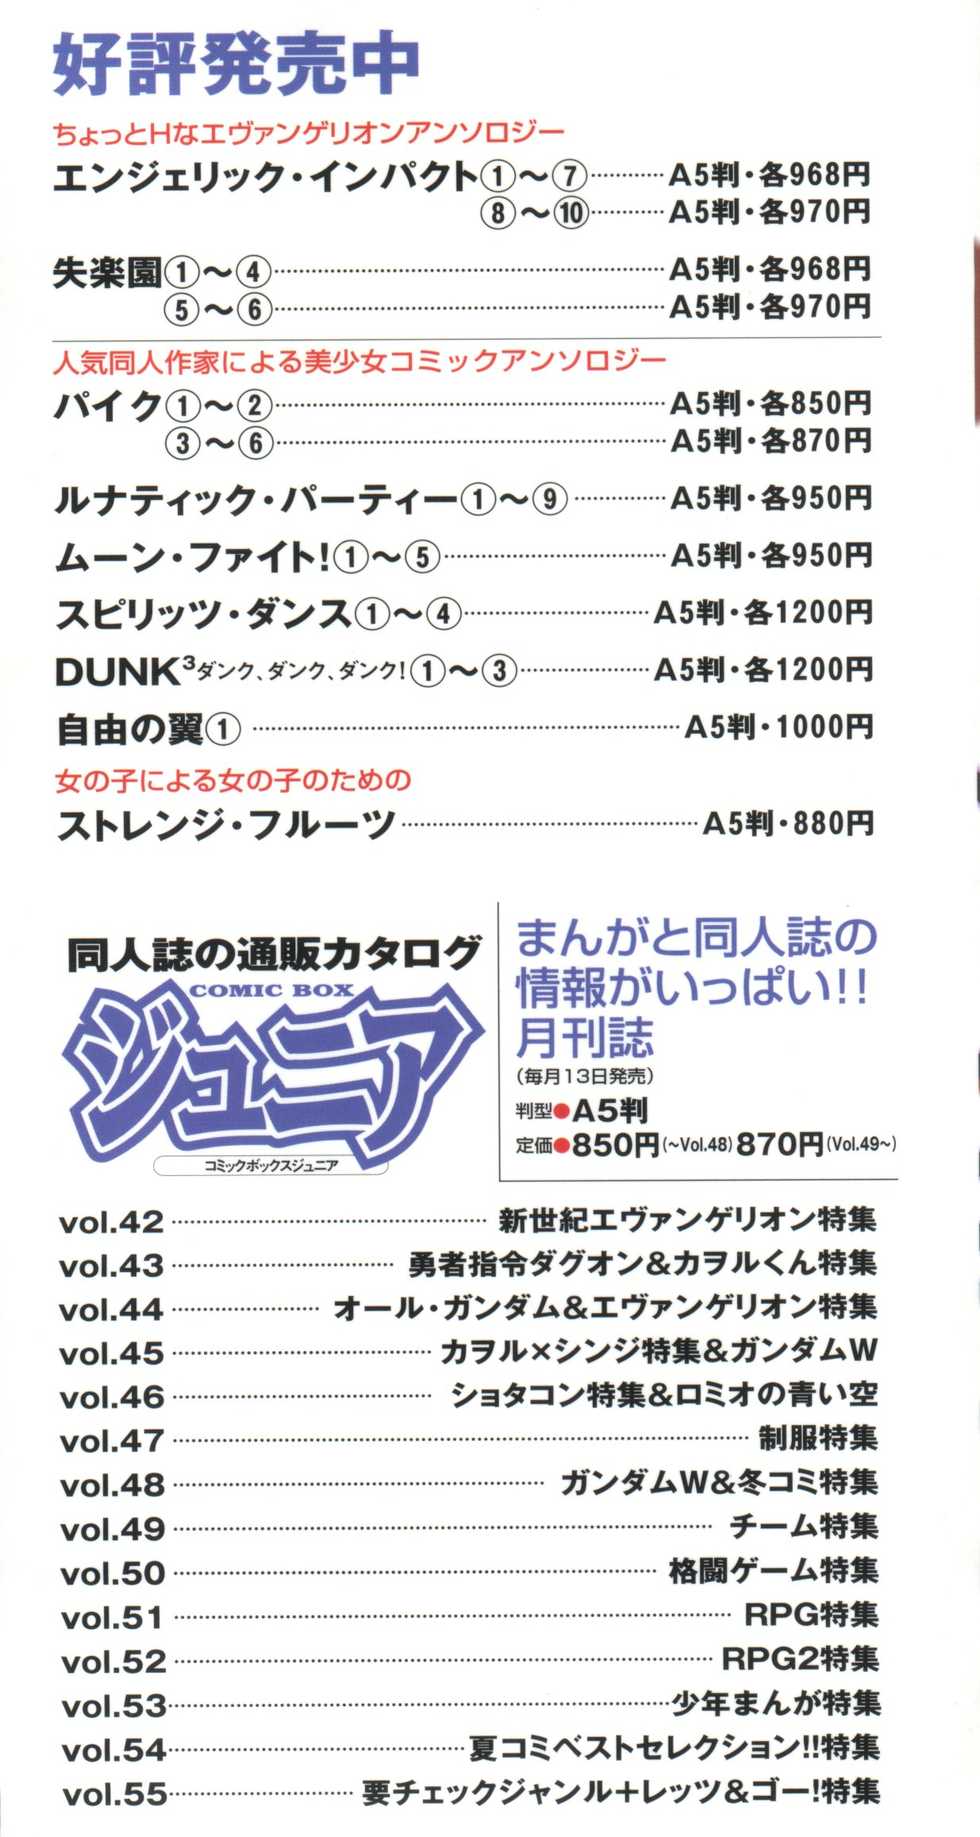 [Anthology] Shitsurakuen 7 - Paradise Lost 7 (Neon Genesis Evangelion) - Page 3